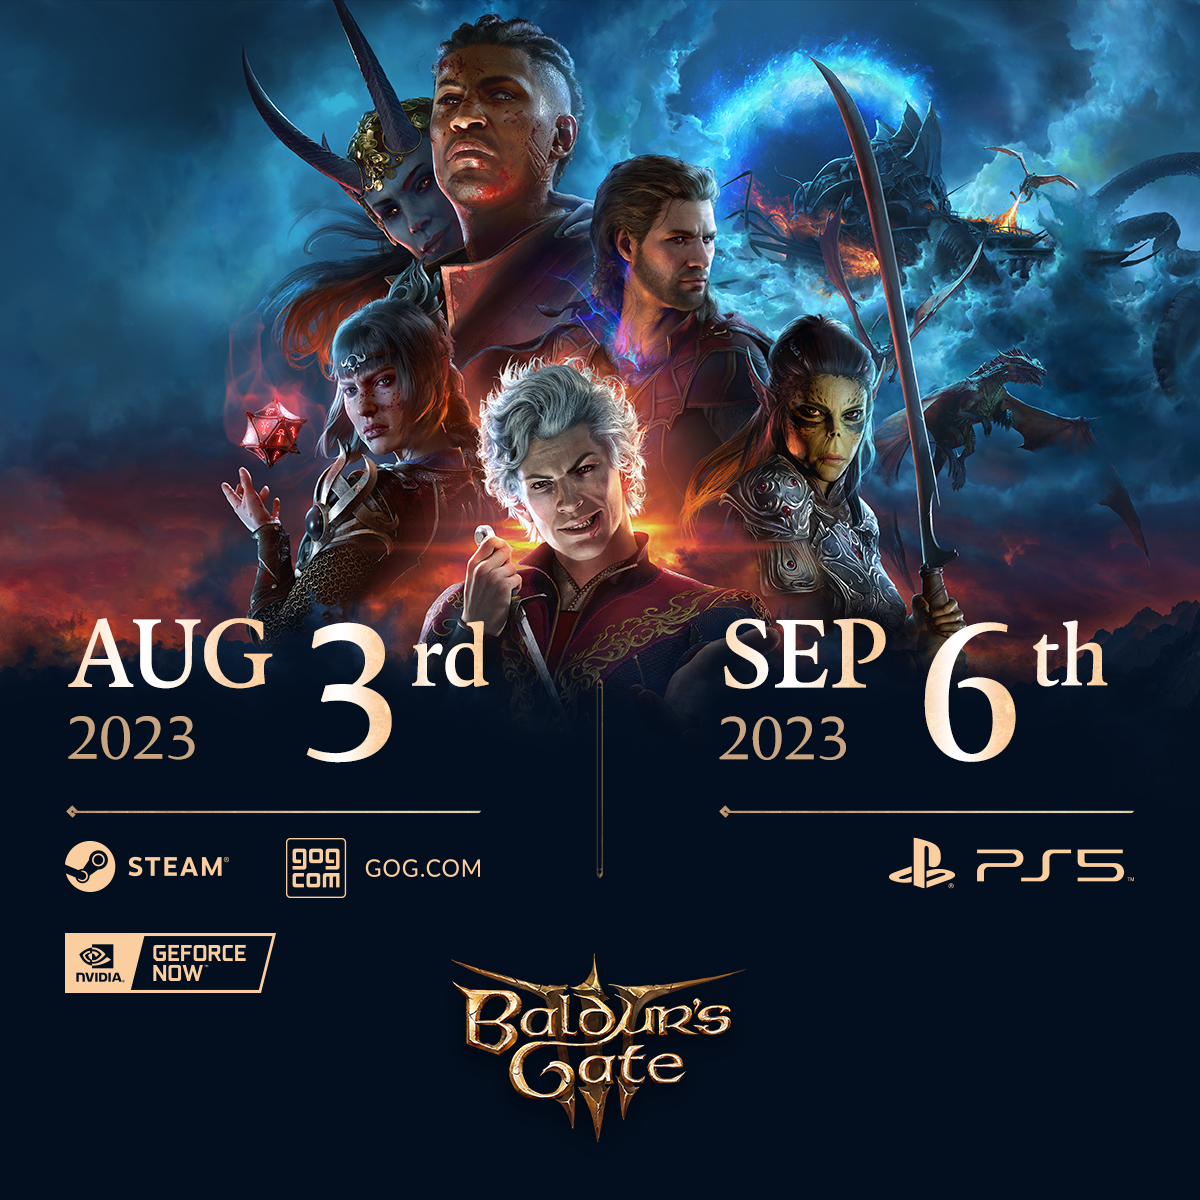 Baldur's Gate 3 Re-Rolls Initiative, Advancing PC Release Date But